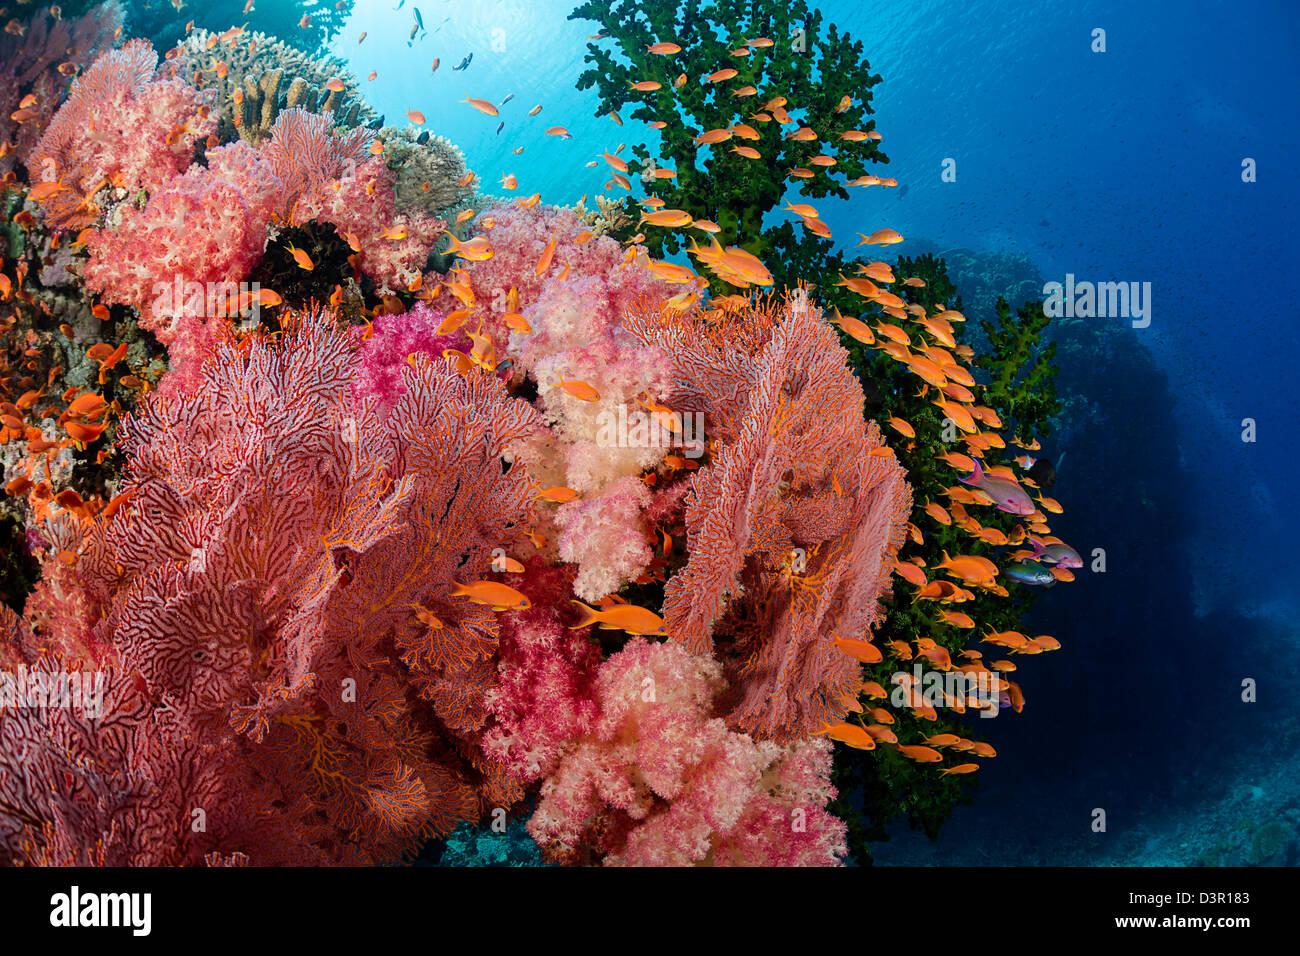 Alconarian und Gorgonien Korallen mit Schulbildung Anthias dominieren diese Fidschi Riff. Stockfoto